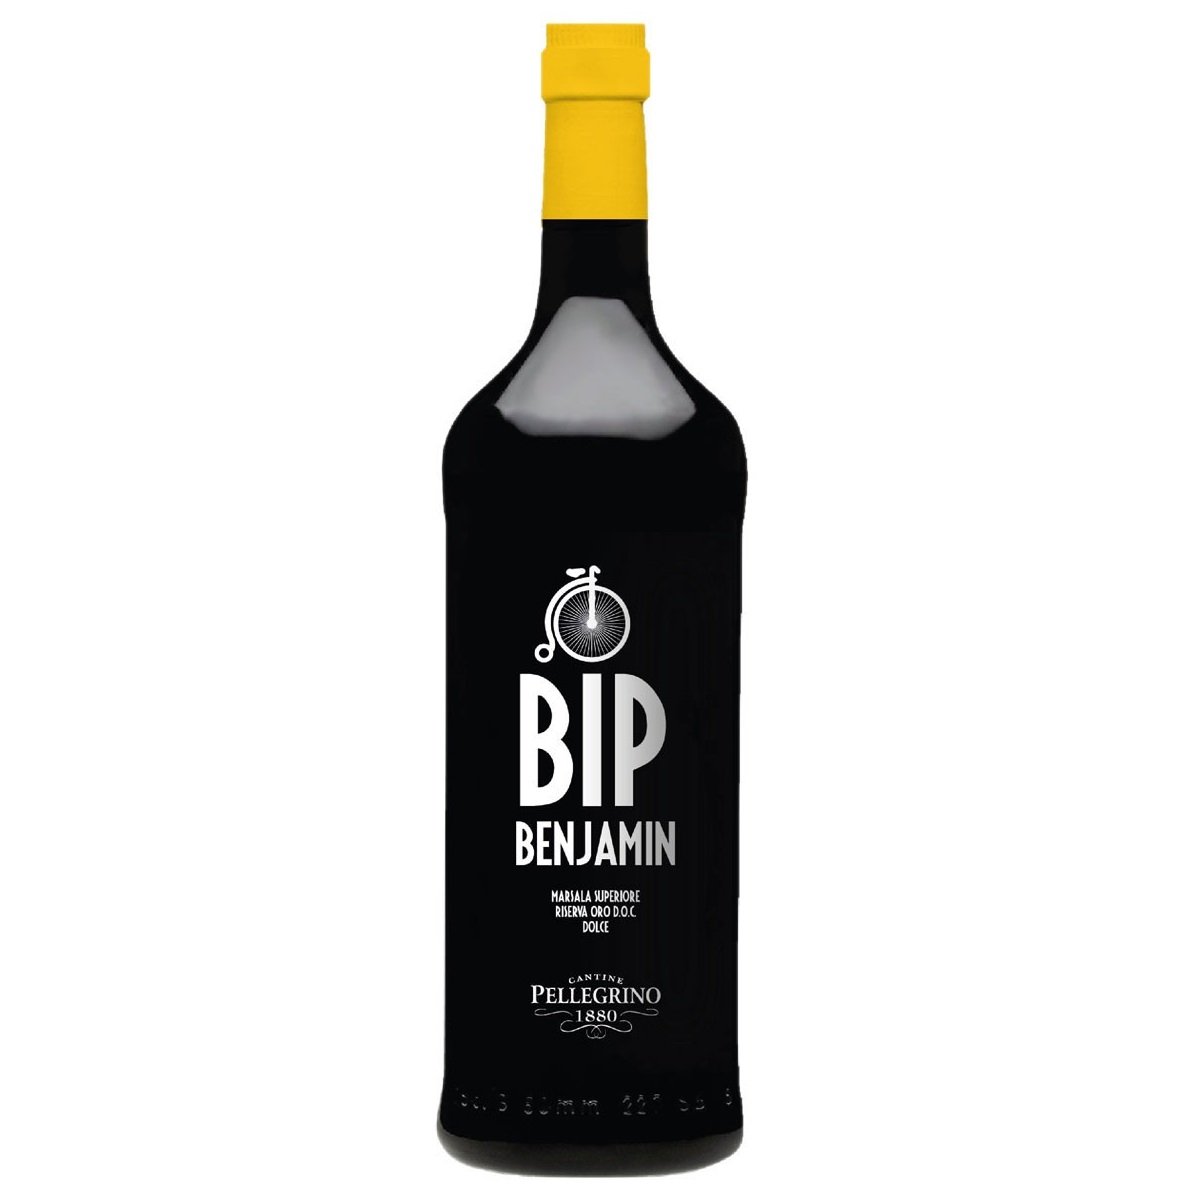 Вино Carlo Pellegrino Bip Benjamin Marsala Superiore Riserva Oro, 18%, 0,75 л - фото 1